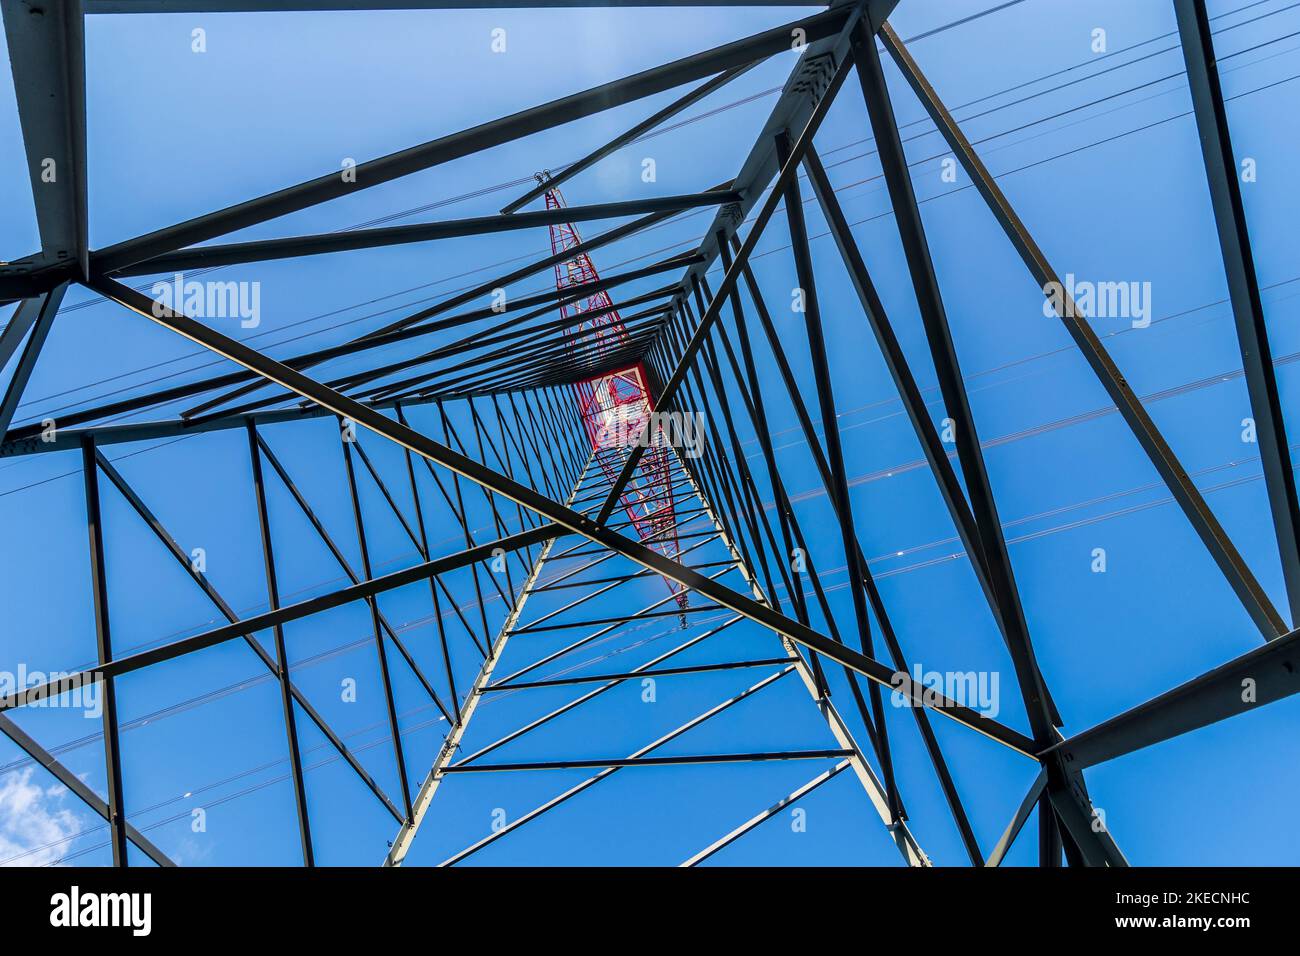 Groß-Enzersdorf, high voltage pylon from below, worm's eye view in Donau, Lower Austria, Austria Stock Photo